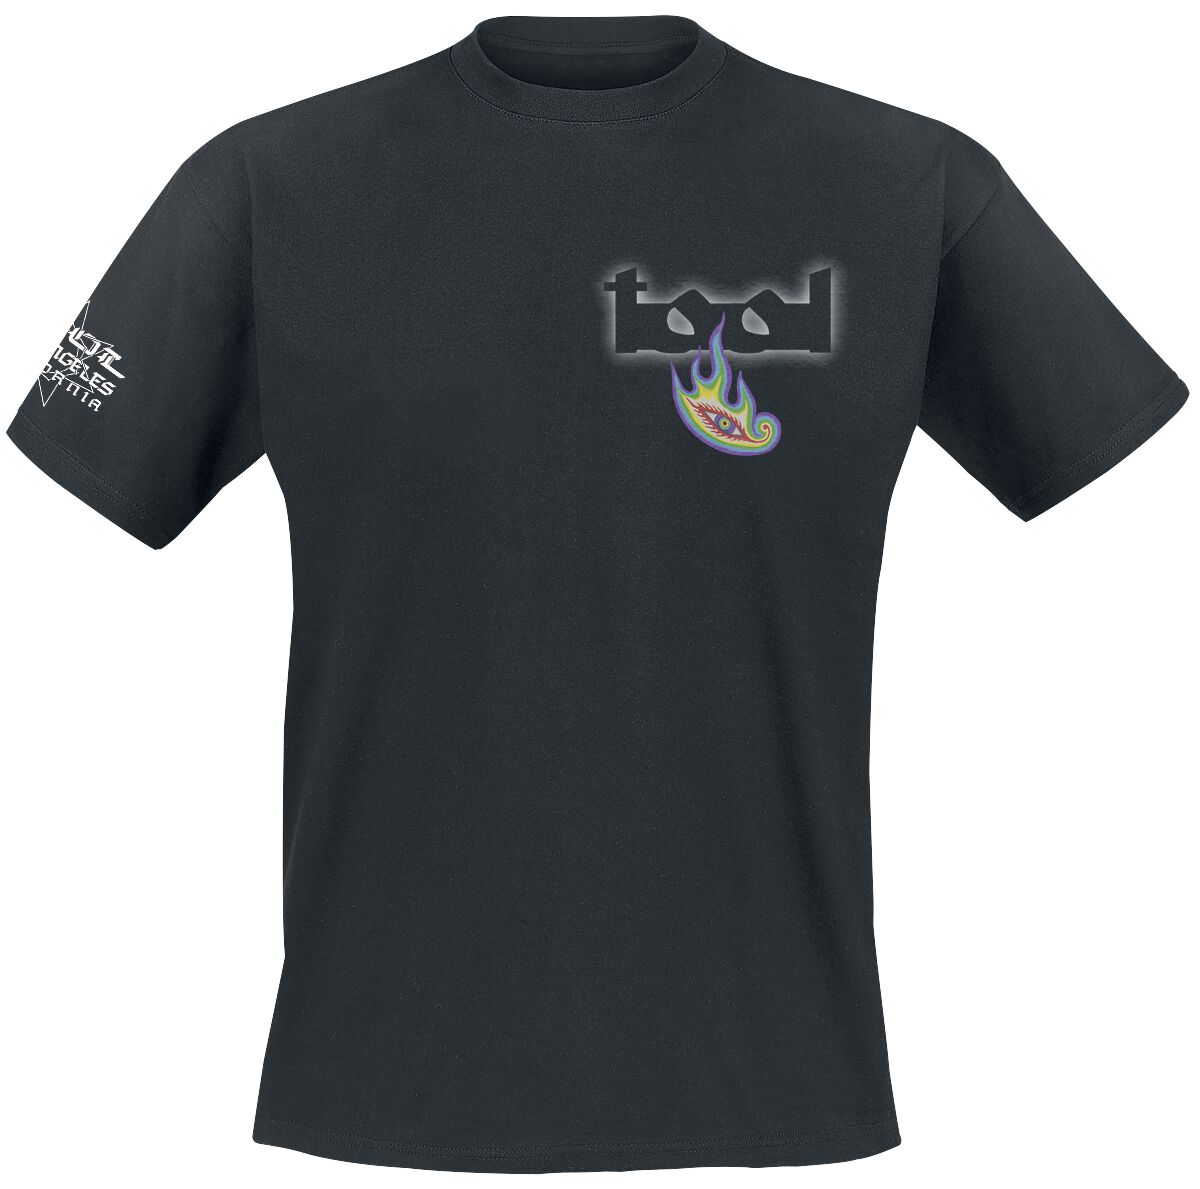 Tool T-Shirt - Lateralus - S bis XXL - für Männer - Größe S - schwarz  - Lizenziertes Merchandise!